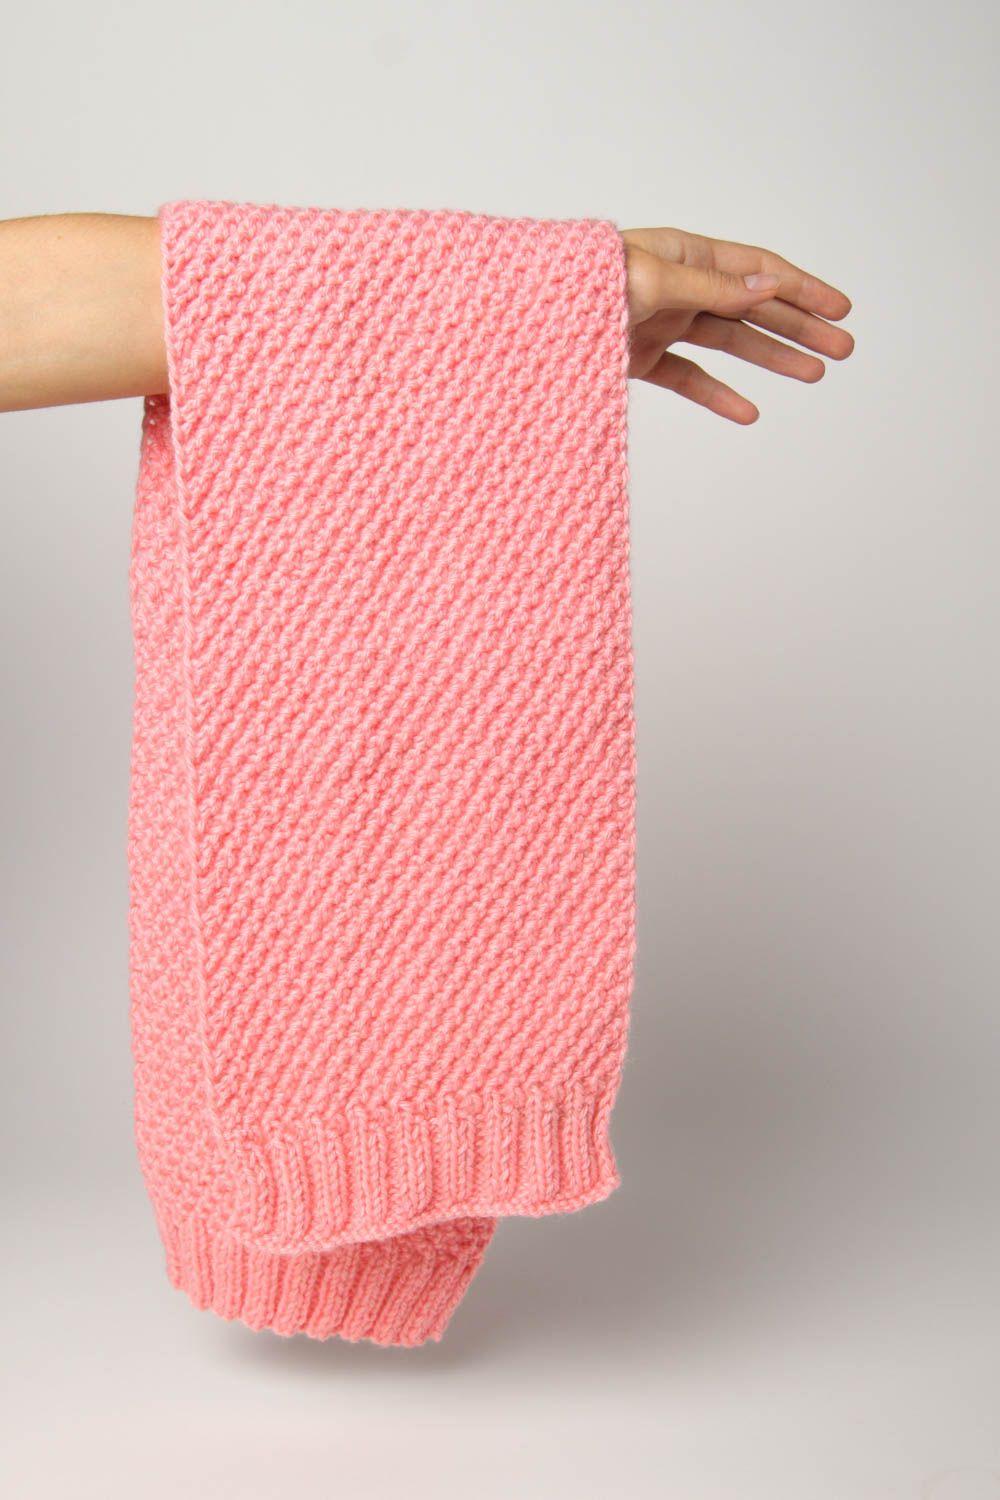 Bufanda tejida artesanal complemento de invierno accesorio para mujer rosa foto 3